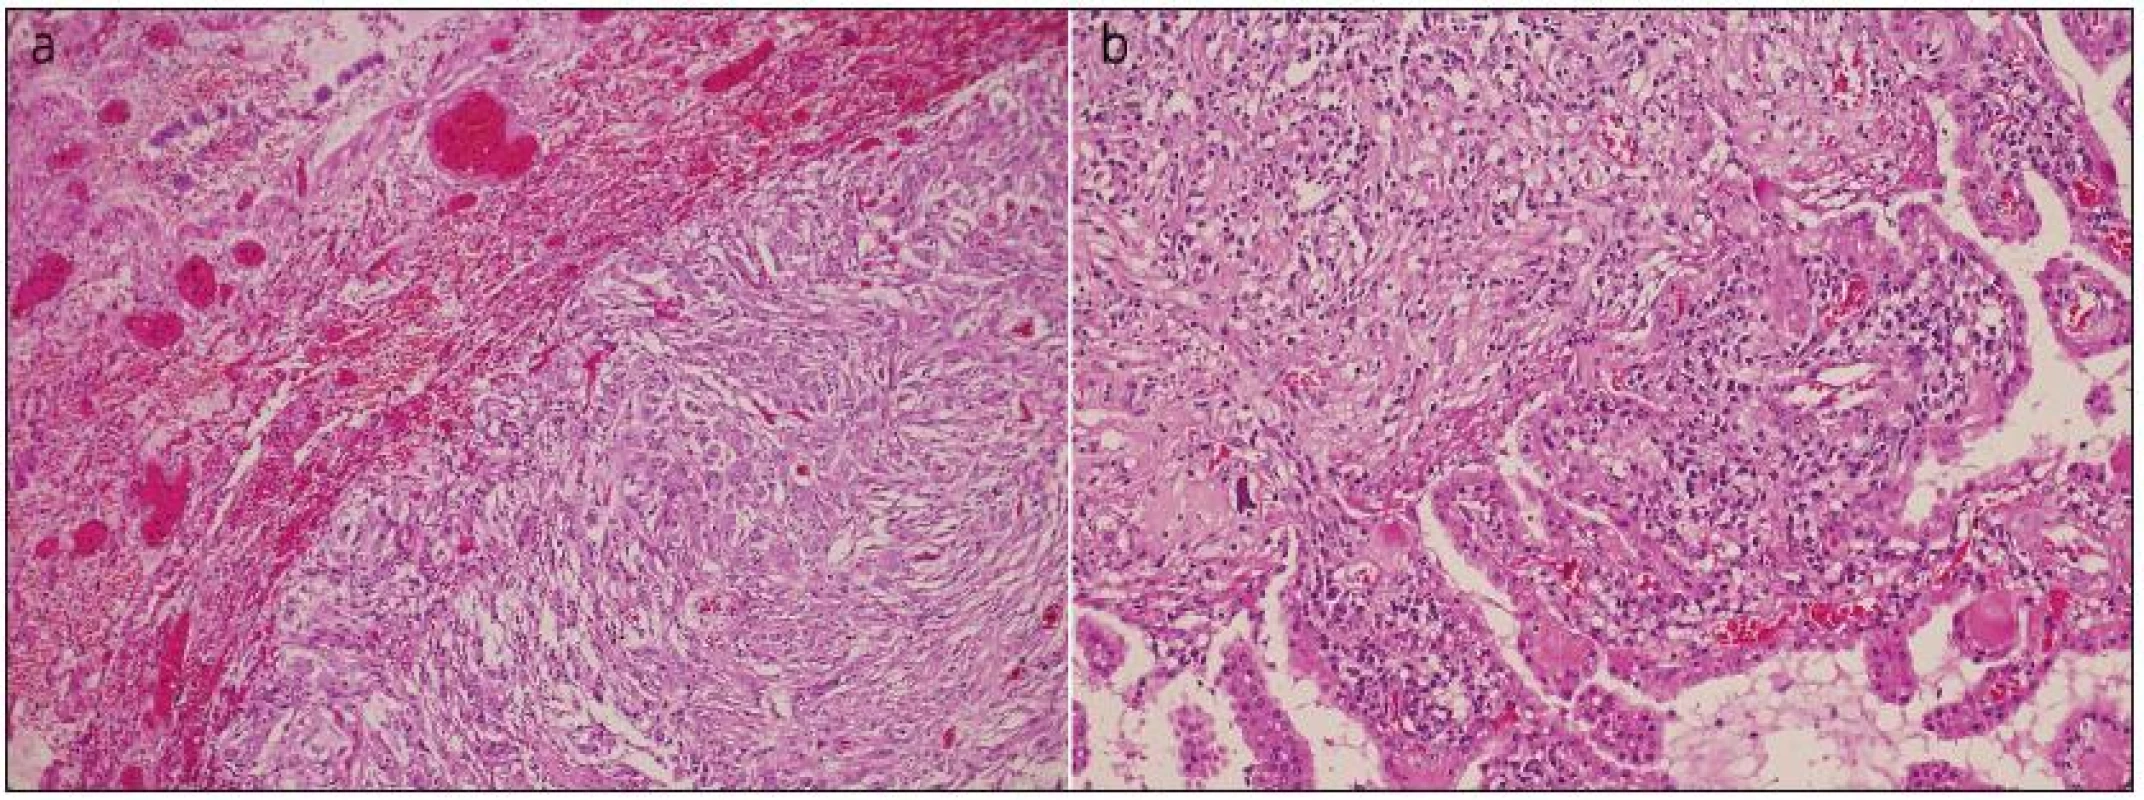 Překrvená plicní tkáň s ohraničenou metastázou anaplastického meningiomu, obdobného vzhledu jako ve vzorku z intrakrania (a). Struktury anaplastického meningeomu s buněčnou atypií, hyperchromasií a mitotickou aktivitou do 10 mitóz na 10 HPF, invadujícího do kalvy, kůže, fokálně nekrotizujícího (není zachyceno v řezu) a přecházejícího do papilární varianty (b).
Barvení hematoxylin eozinem.